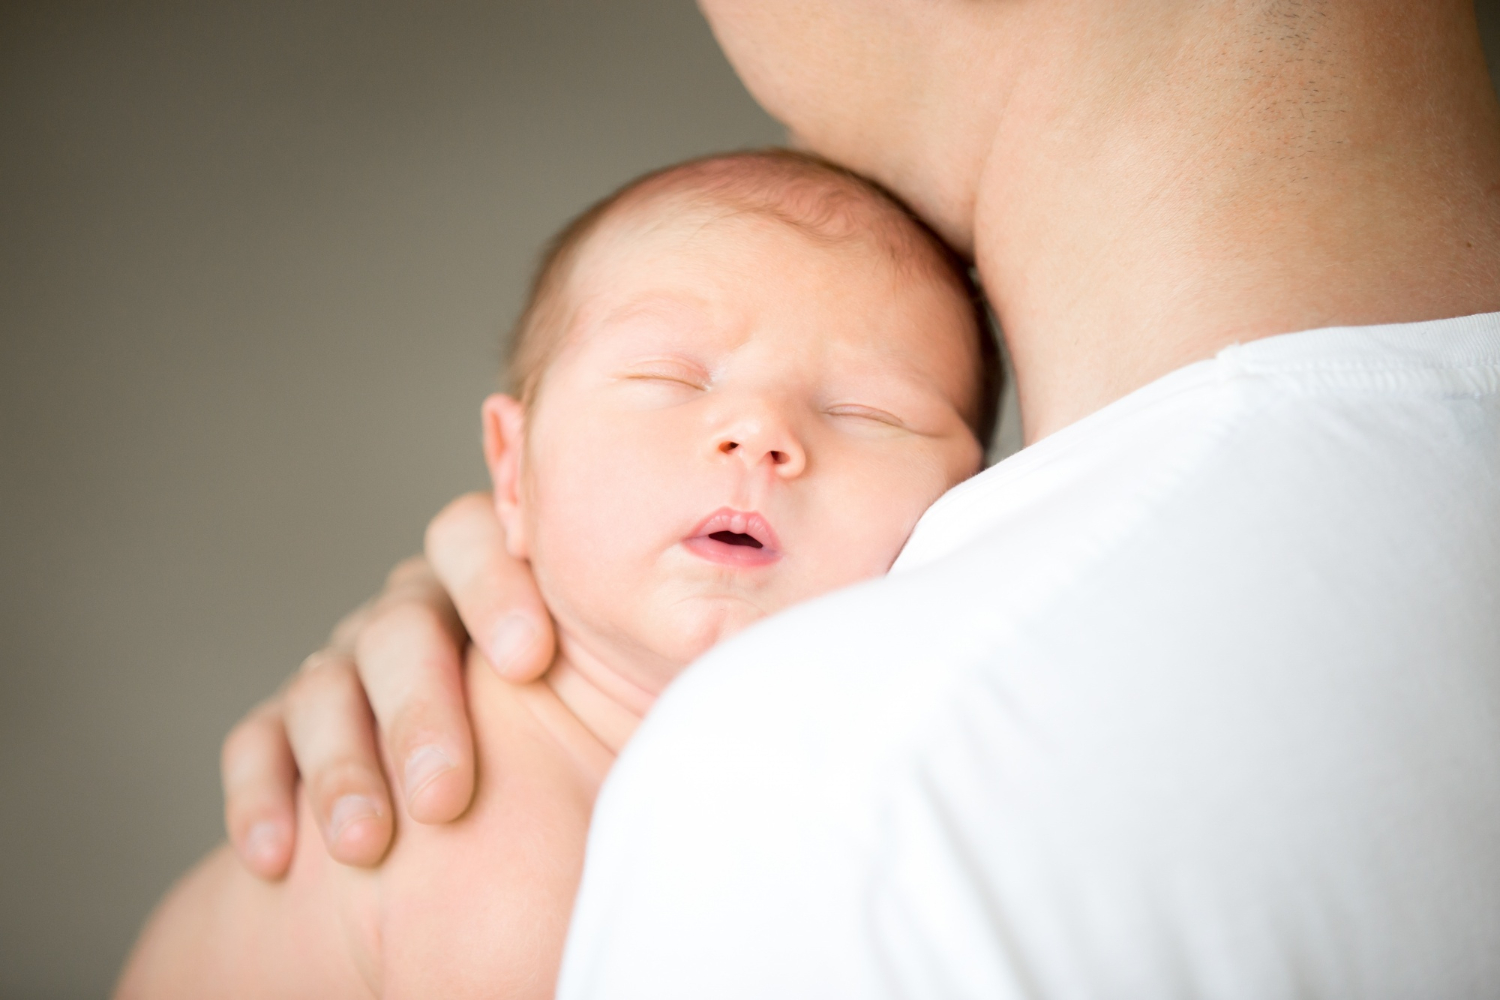 سلبيات الرضاعة الطبيعية على الأم